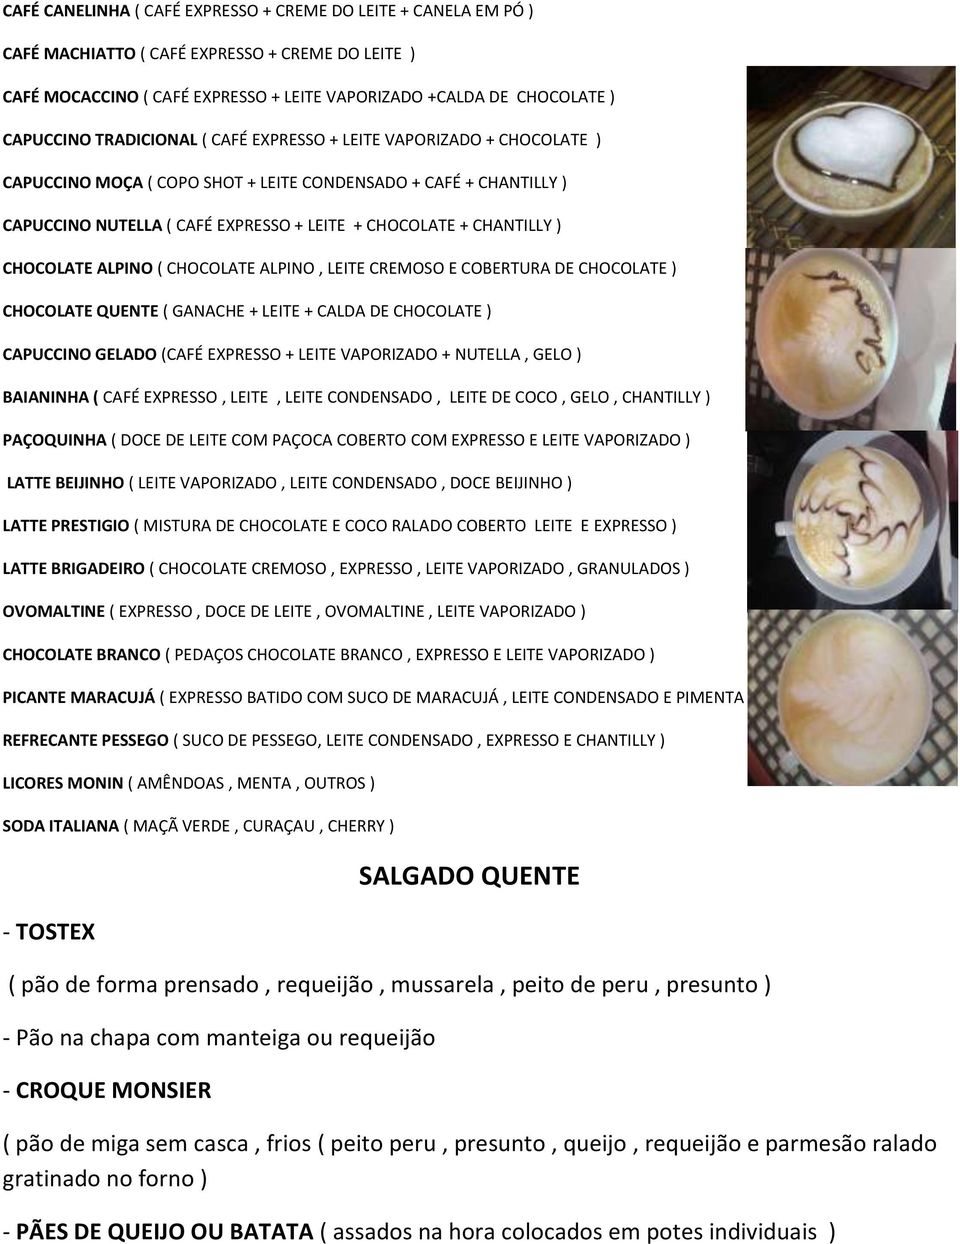 CHOCOLATE ALPINO ( CHOCOLATE ALPINO, LEITE CREMOSO E COBERTURA DE CHOCOLATE ) CHOCOLATE QUENTE ( GANACHE + LEITE + CALDA DE CHOCOLATE ) CAPUCCINO GELADO (CAFÉ EXPRESSO + LEITE VAPORIZADO + NUTELLA,